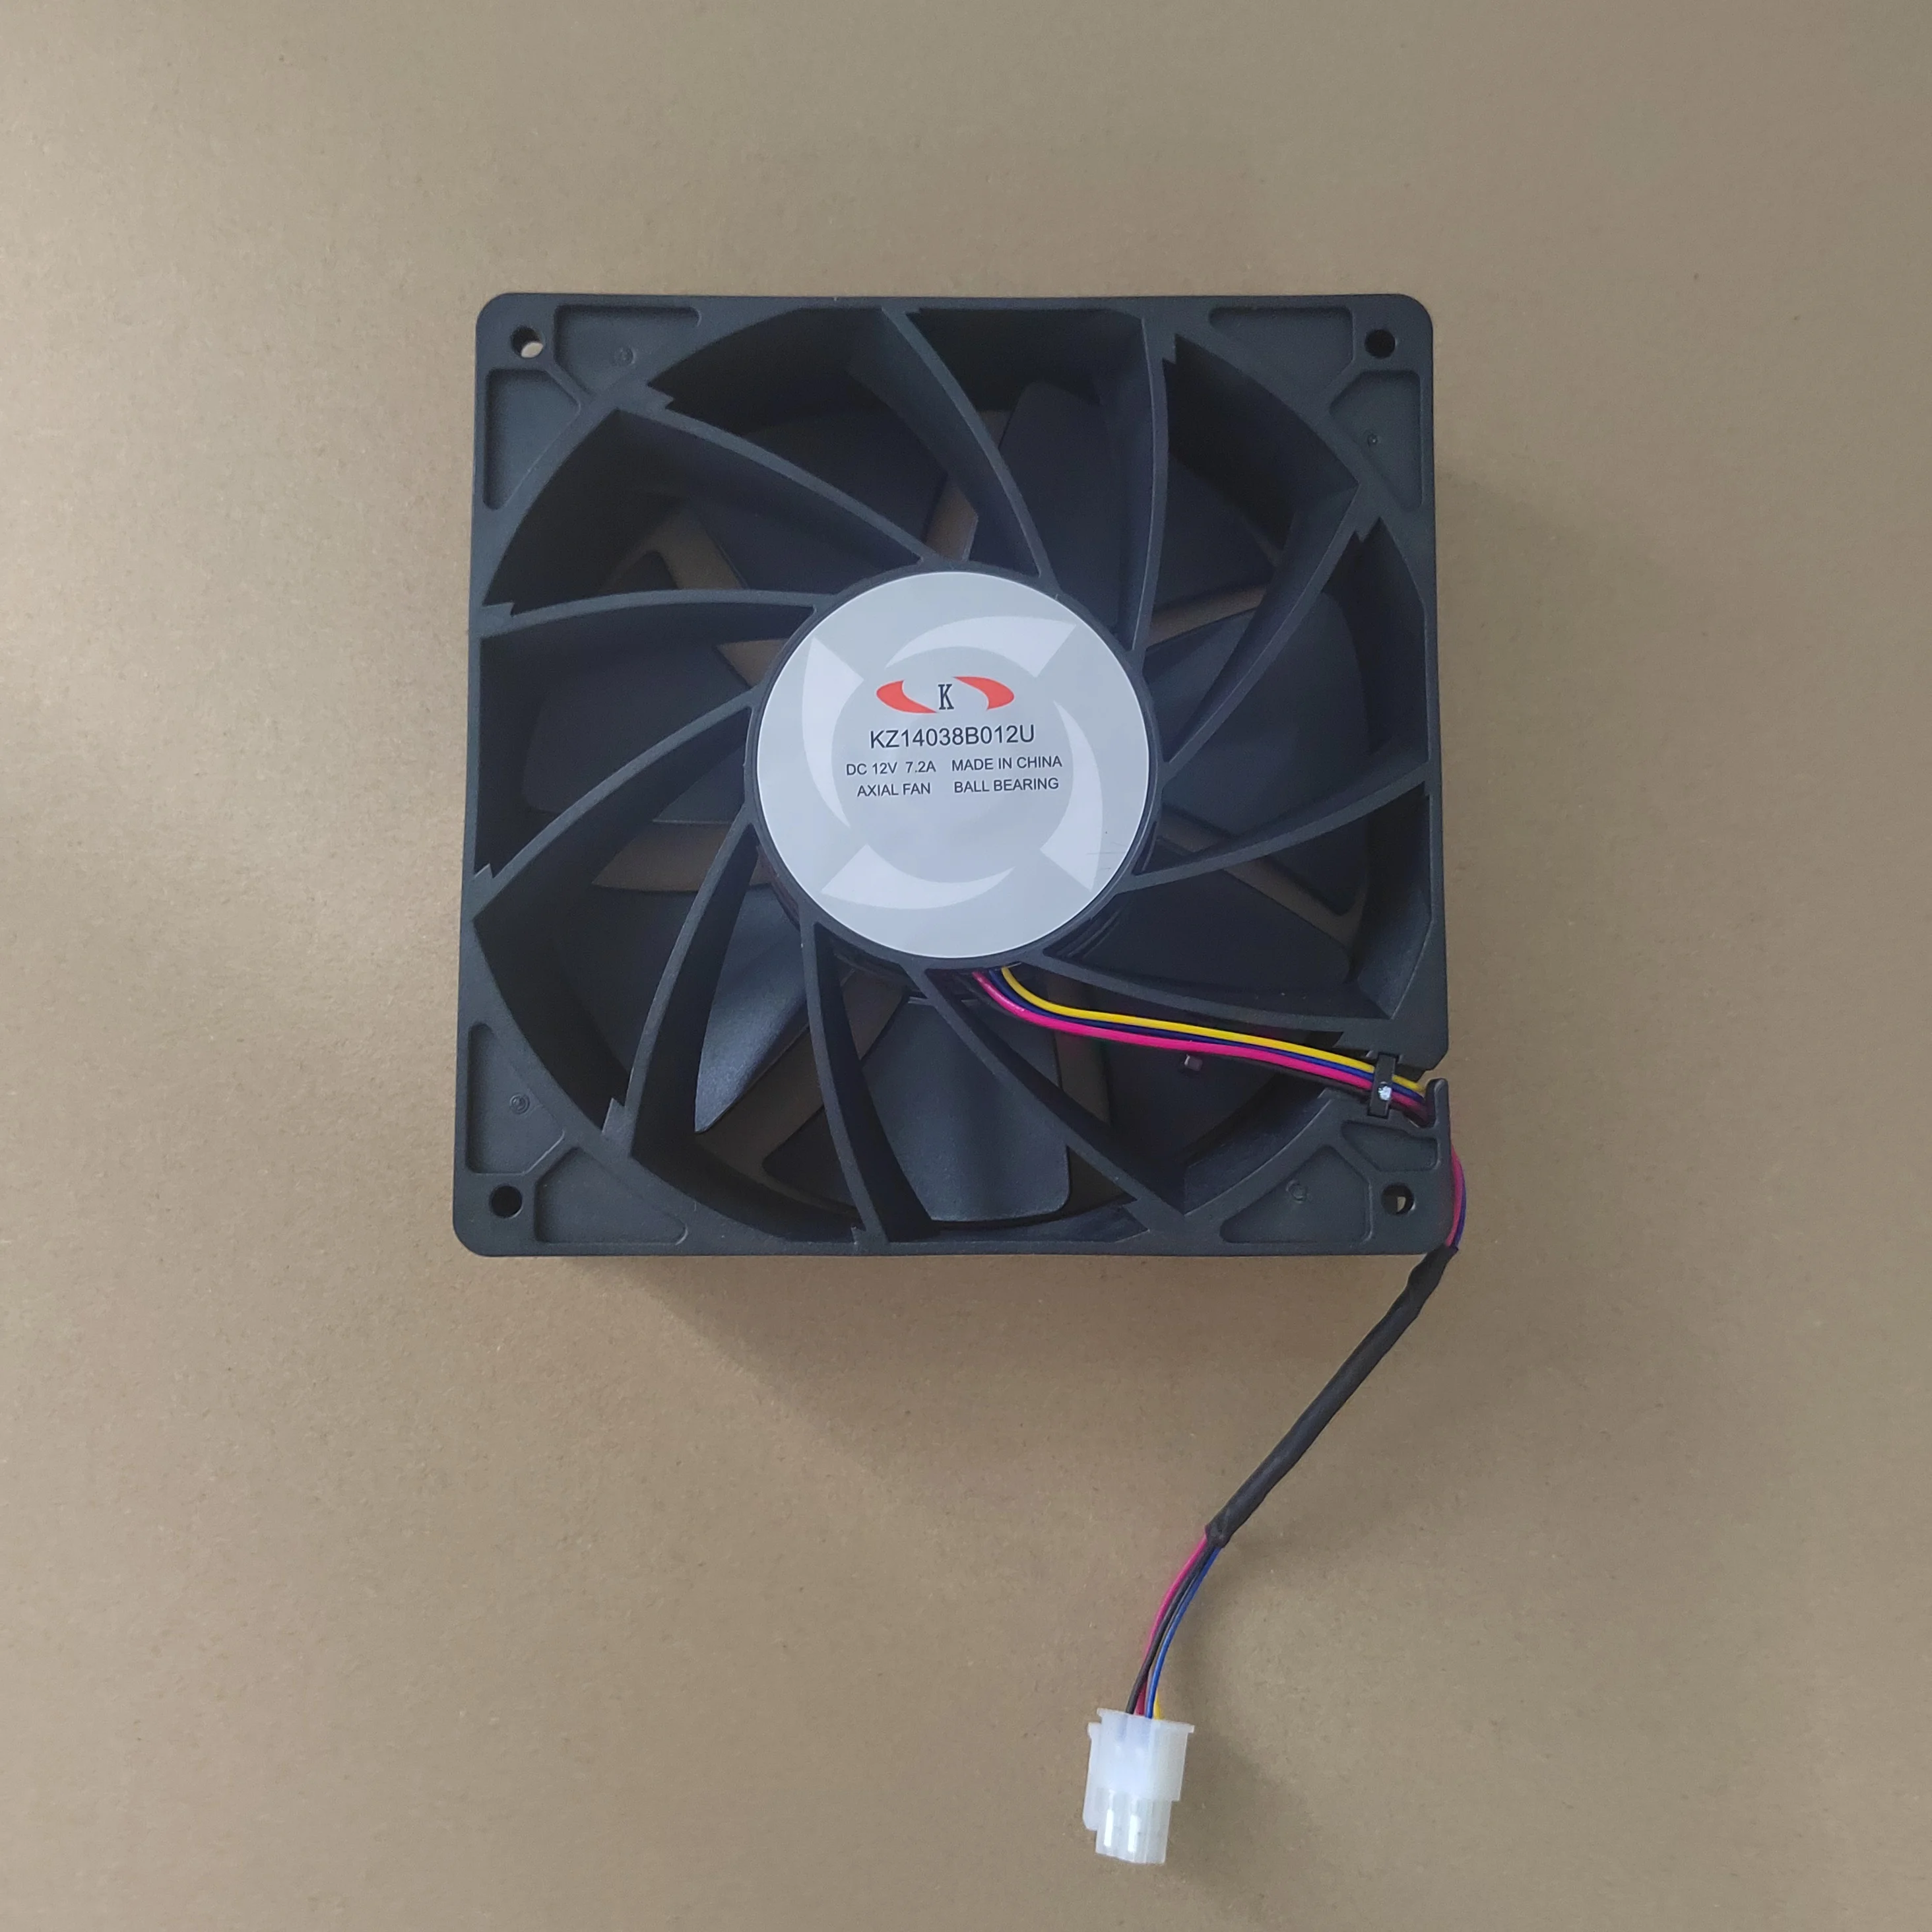 Novo original whatsminer fan cooler 14038 é adequado para m21s m20s m30s m32 m31s++m50